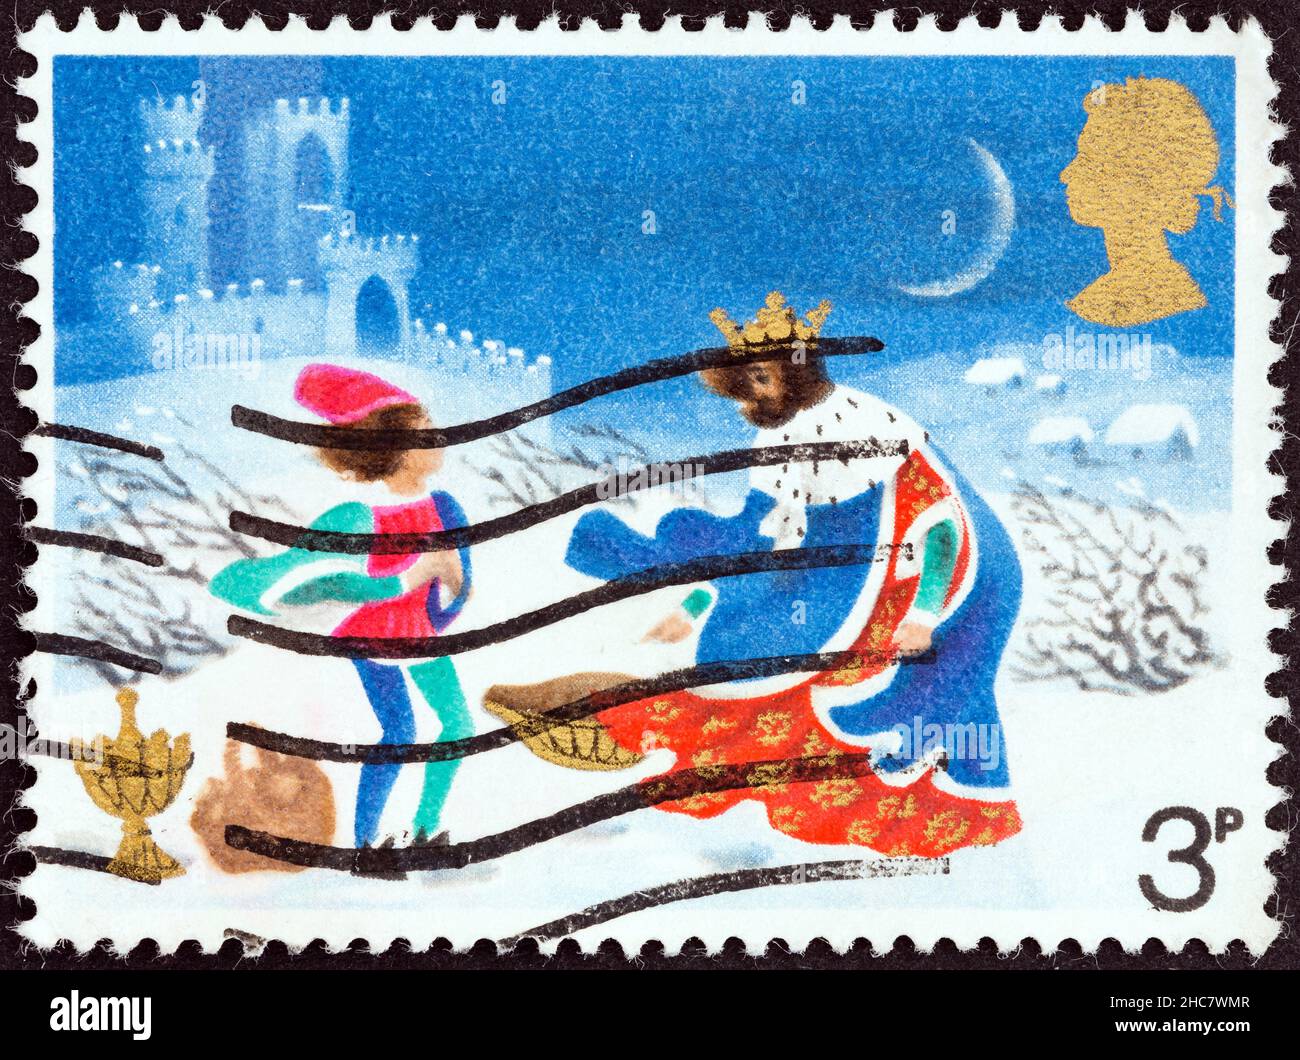 REGNO UNITO - CIRCA 1973: Un francobollo stampato nel Regno Unito mostra lotta contro il vento, Illustrazione per Natale carol buon re Venceslao. Foto Stock